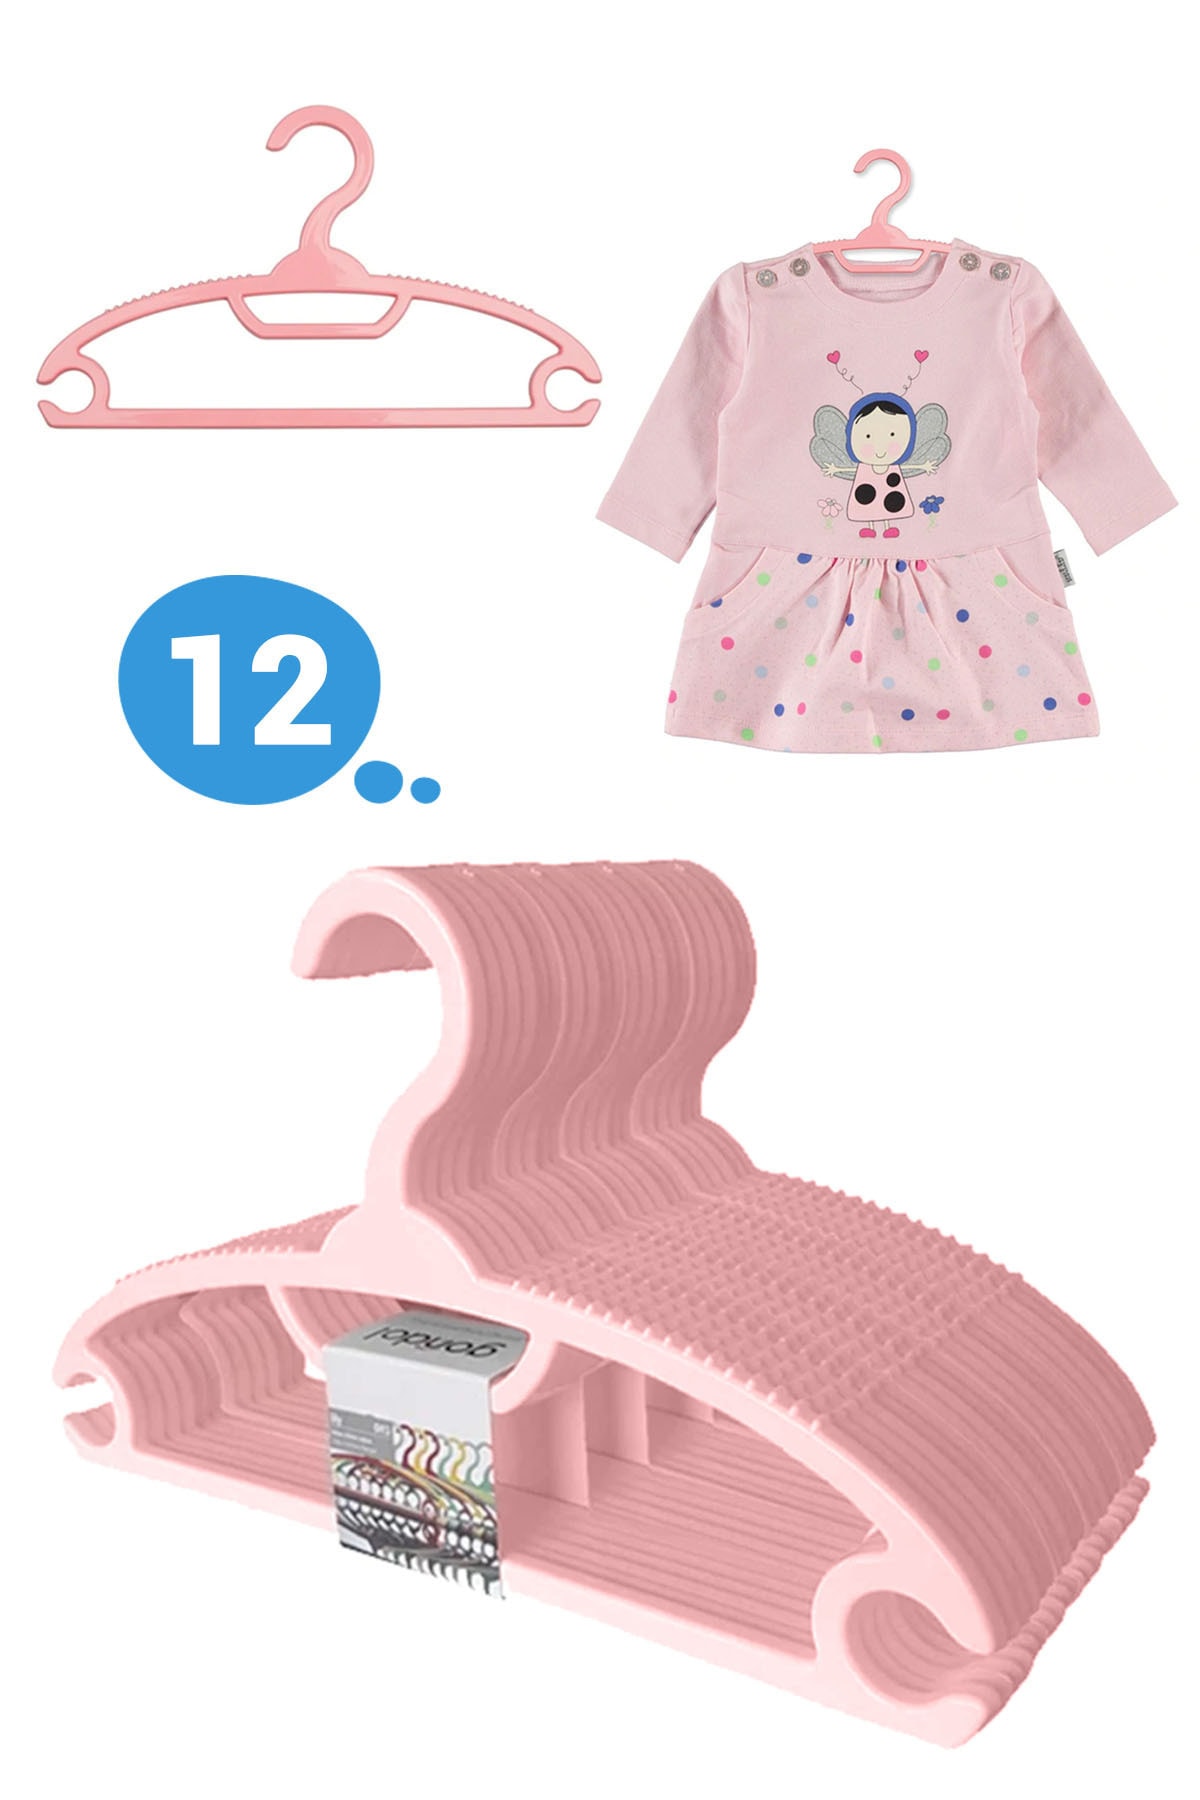 Bebek Elbise Askısı Bebek Çocuk Giysi Kıyafet Askısı 12 Adet Gondol Pembe Askı